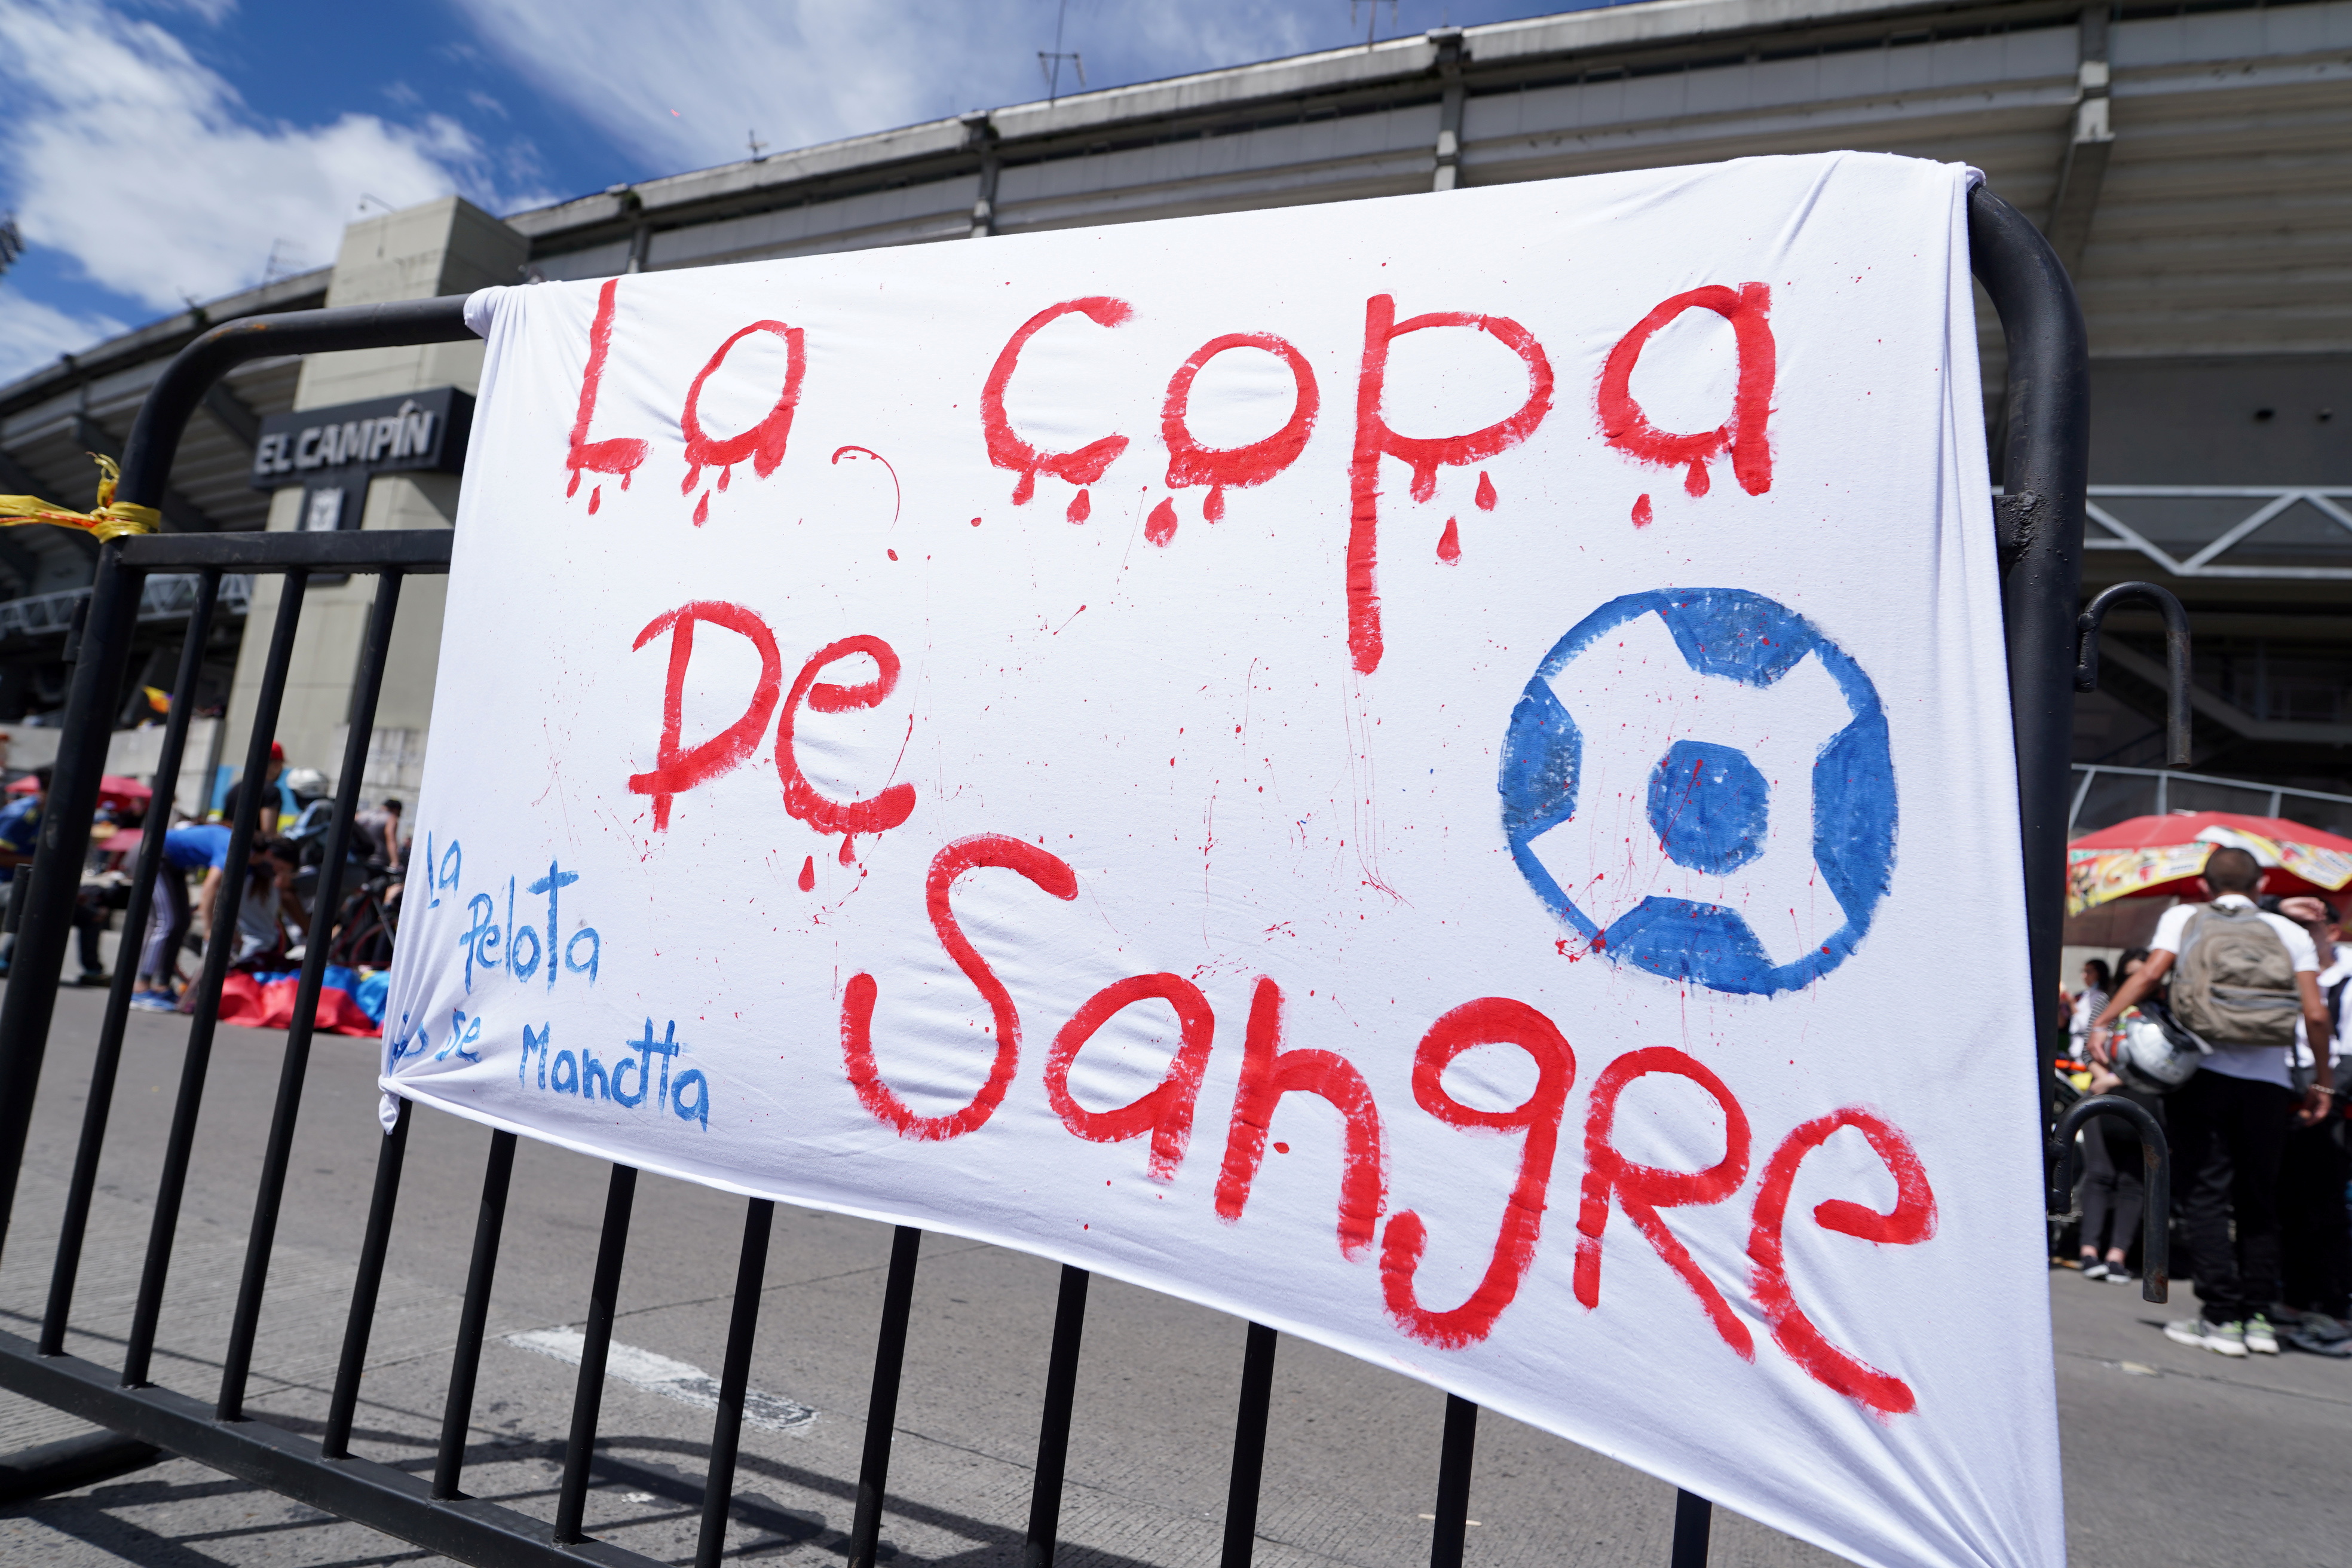 "La Copa de la Sangre", el lema de una bandera en una protesta de activistas contra la Copa América en Colombia en las puertas del estadio El Campín de Bogotá (REUTERS/Nathalia Angarita)